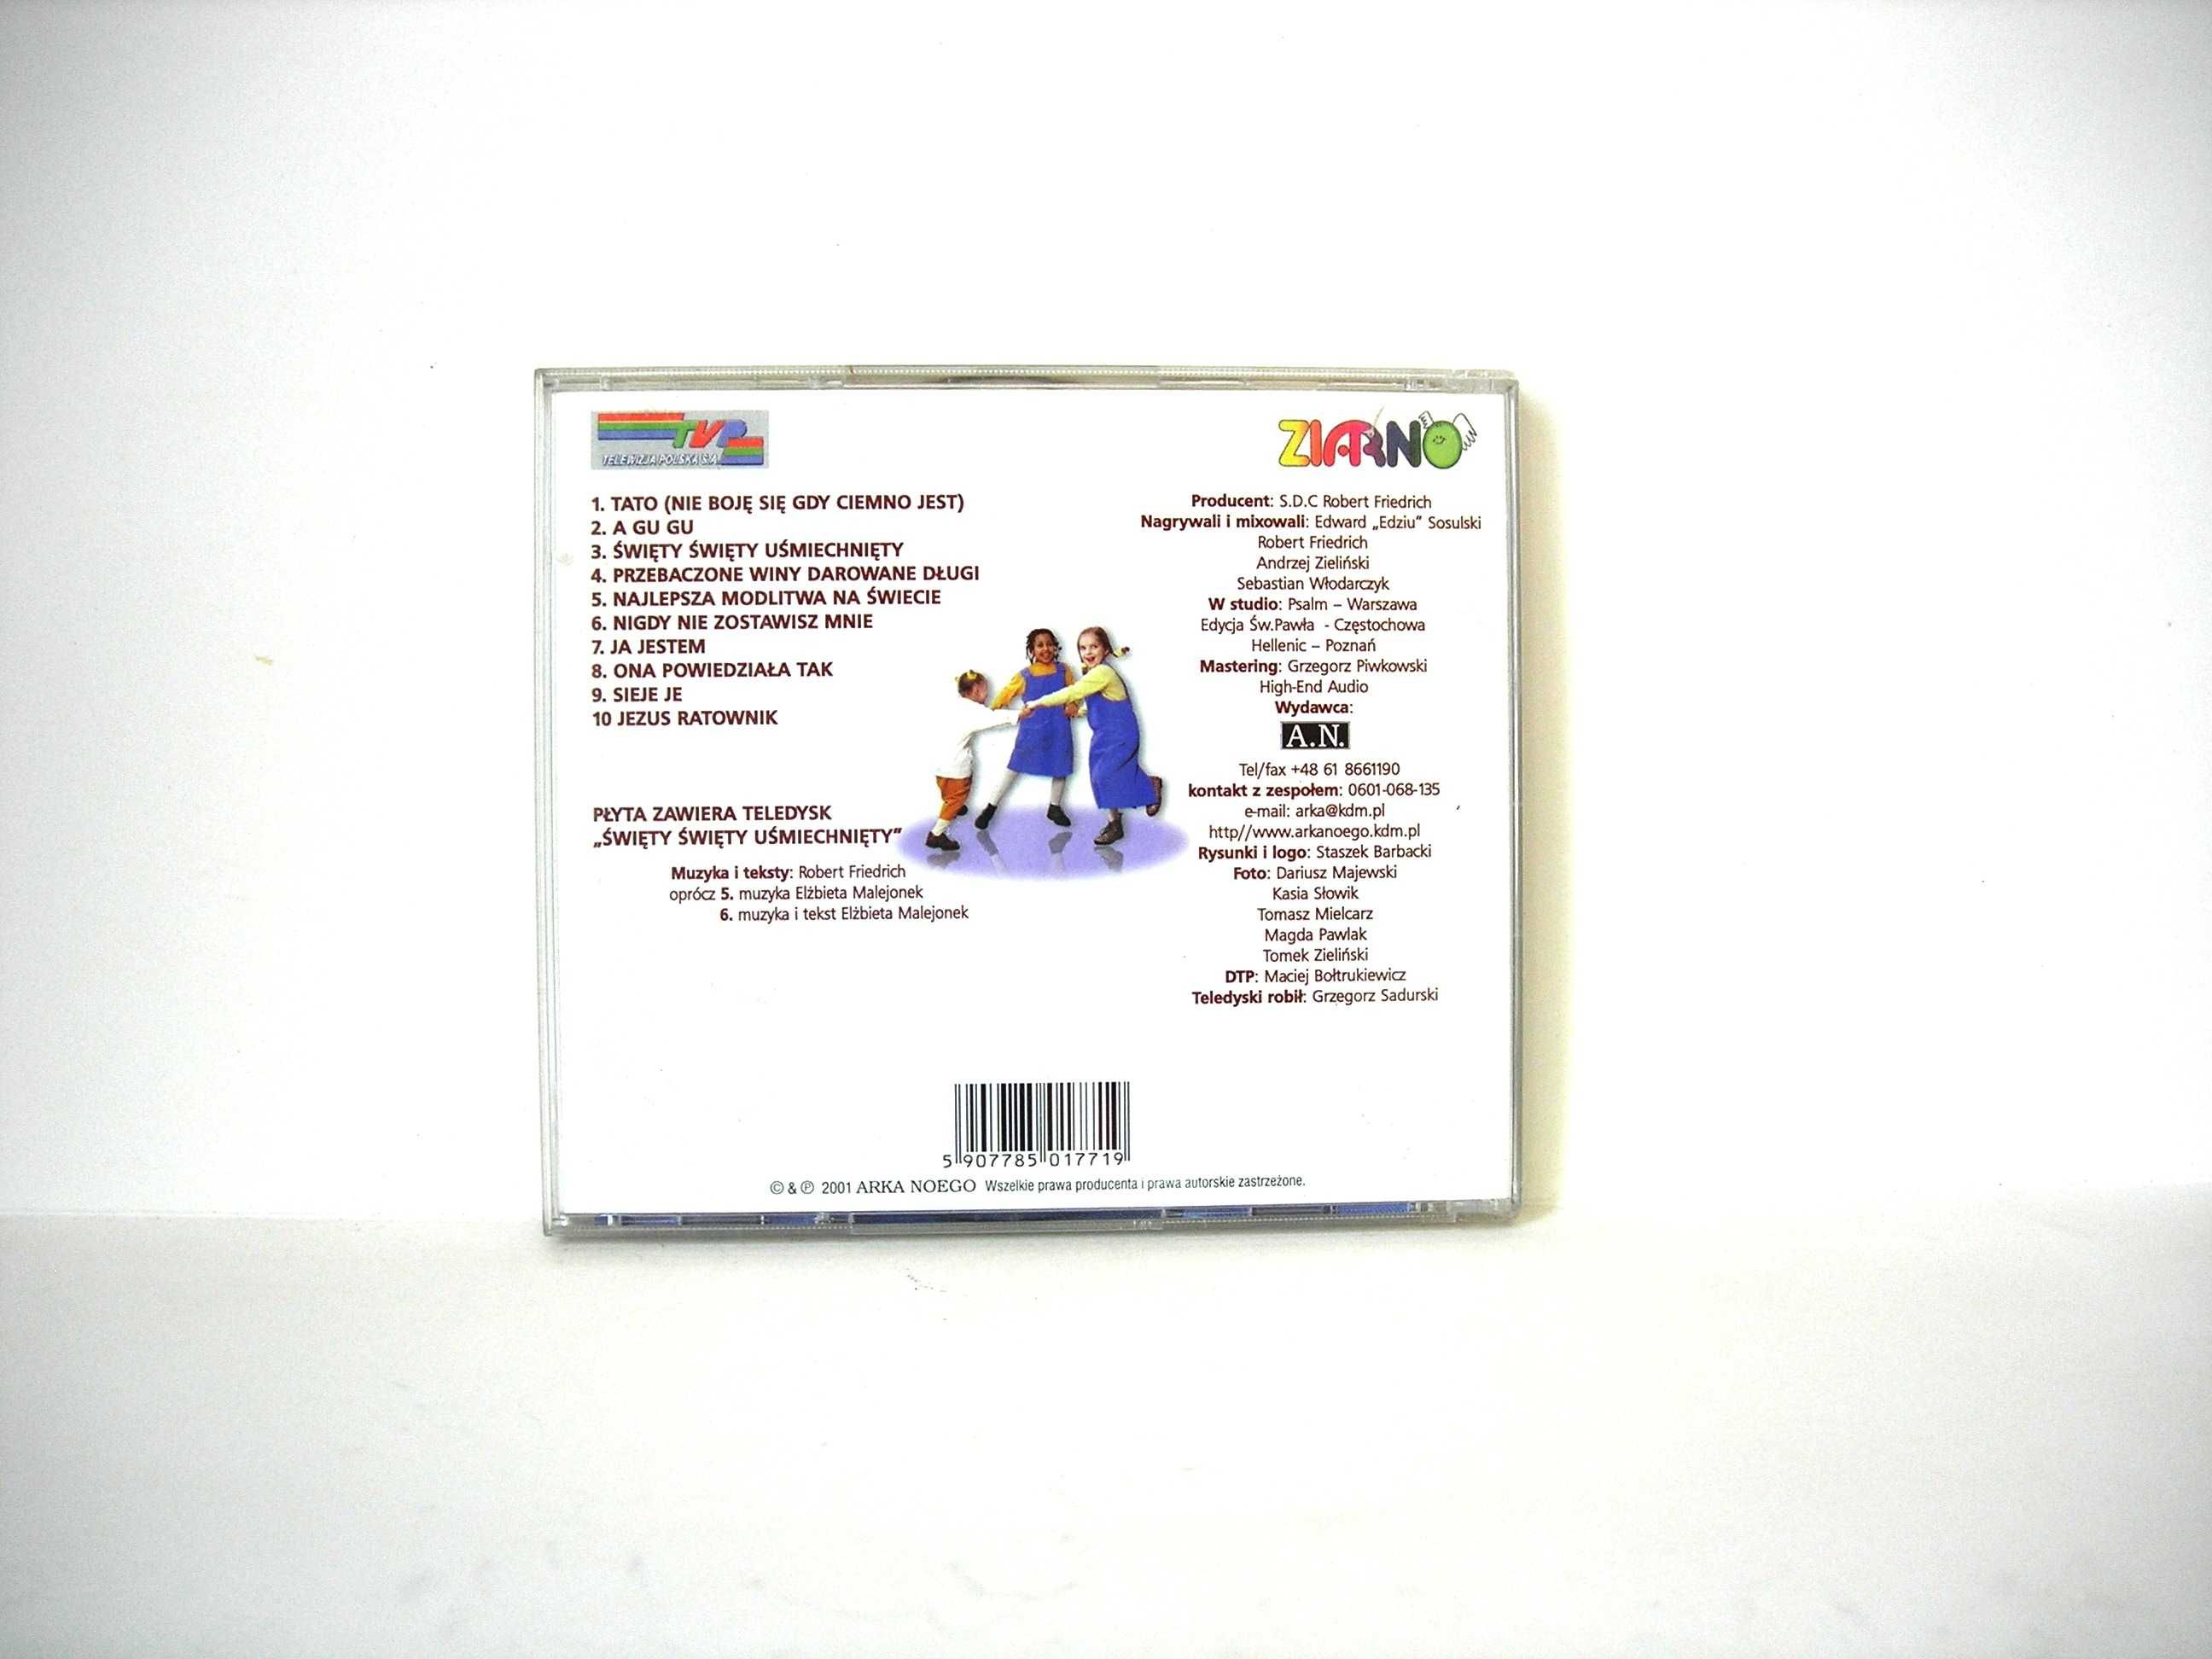 Arka Noego "A Gu Gu" CD Arka Noego 2001